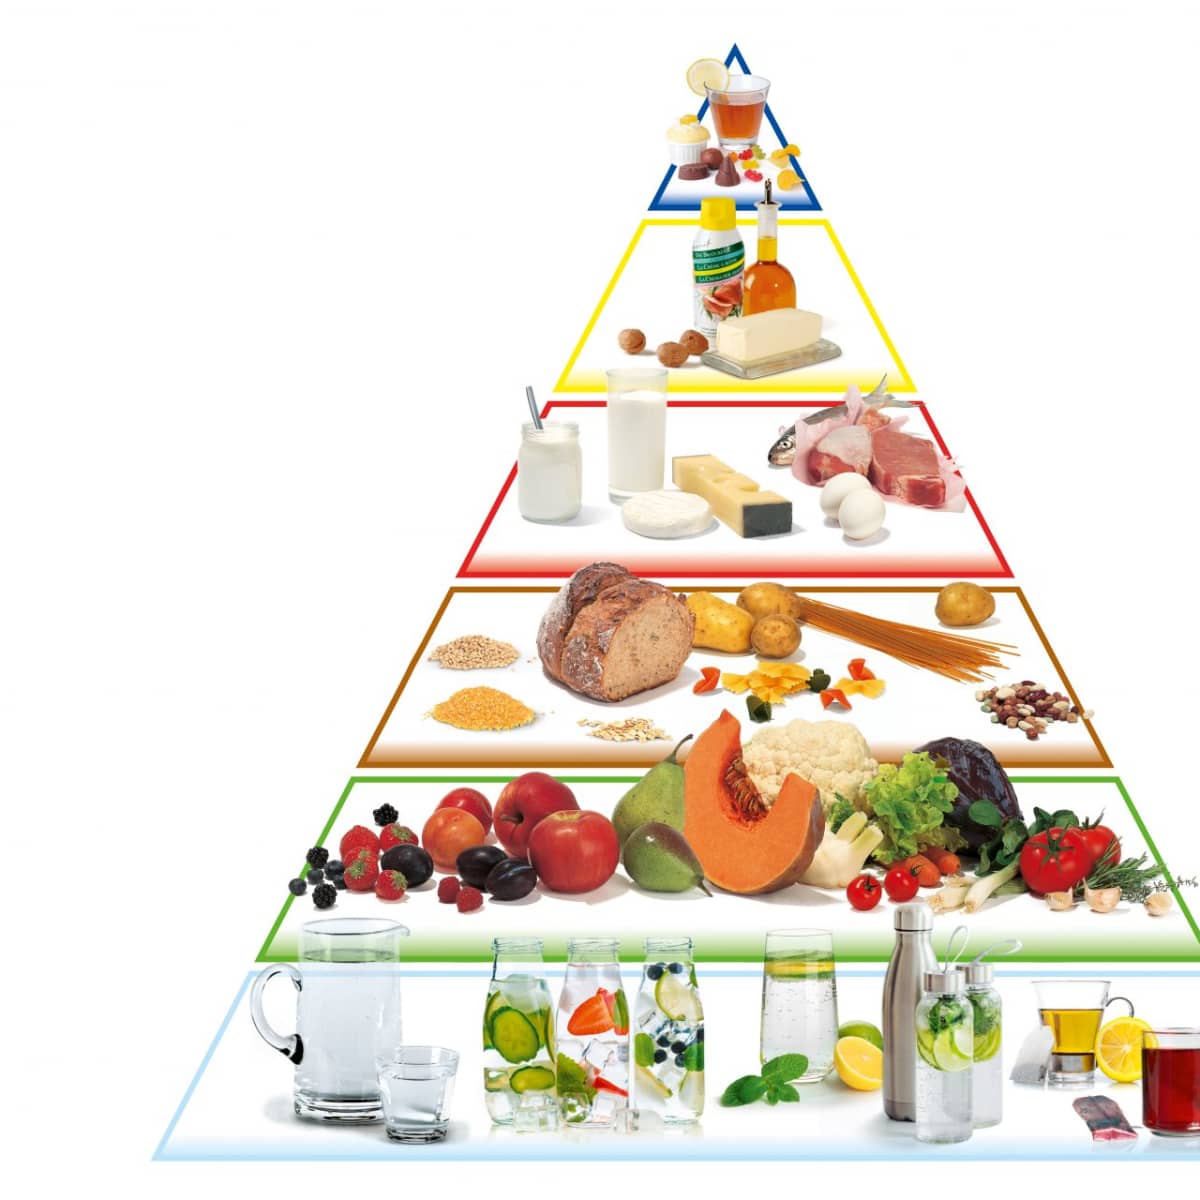 La pyramide alimentaire : un équilibre parfait